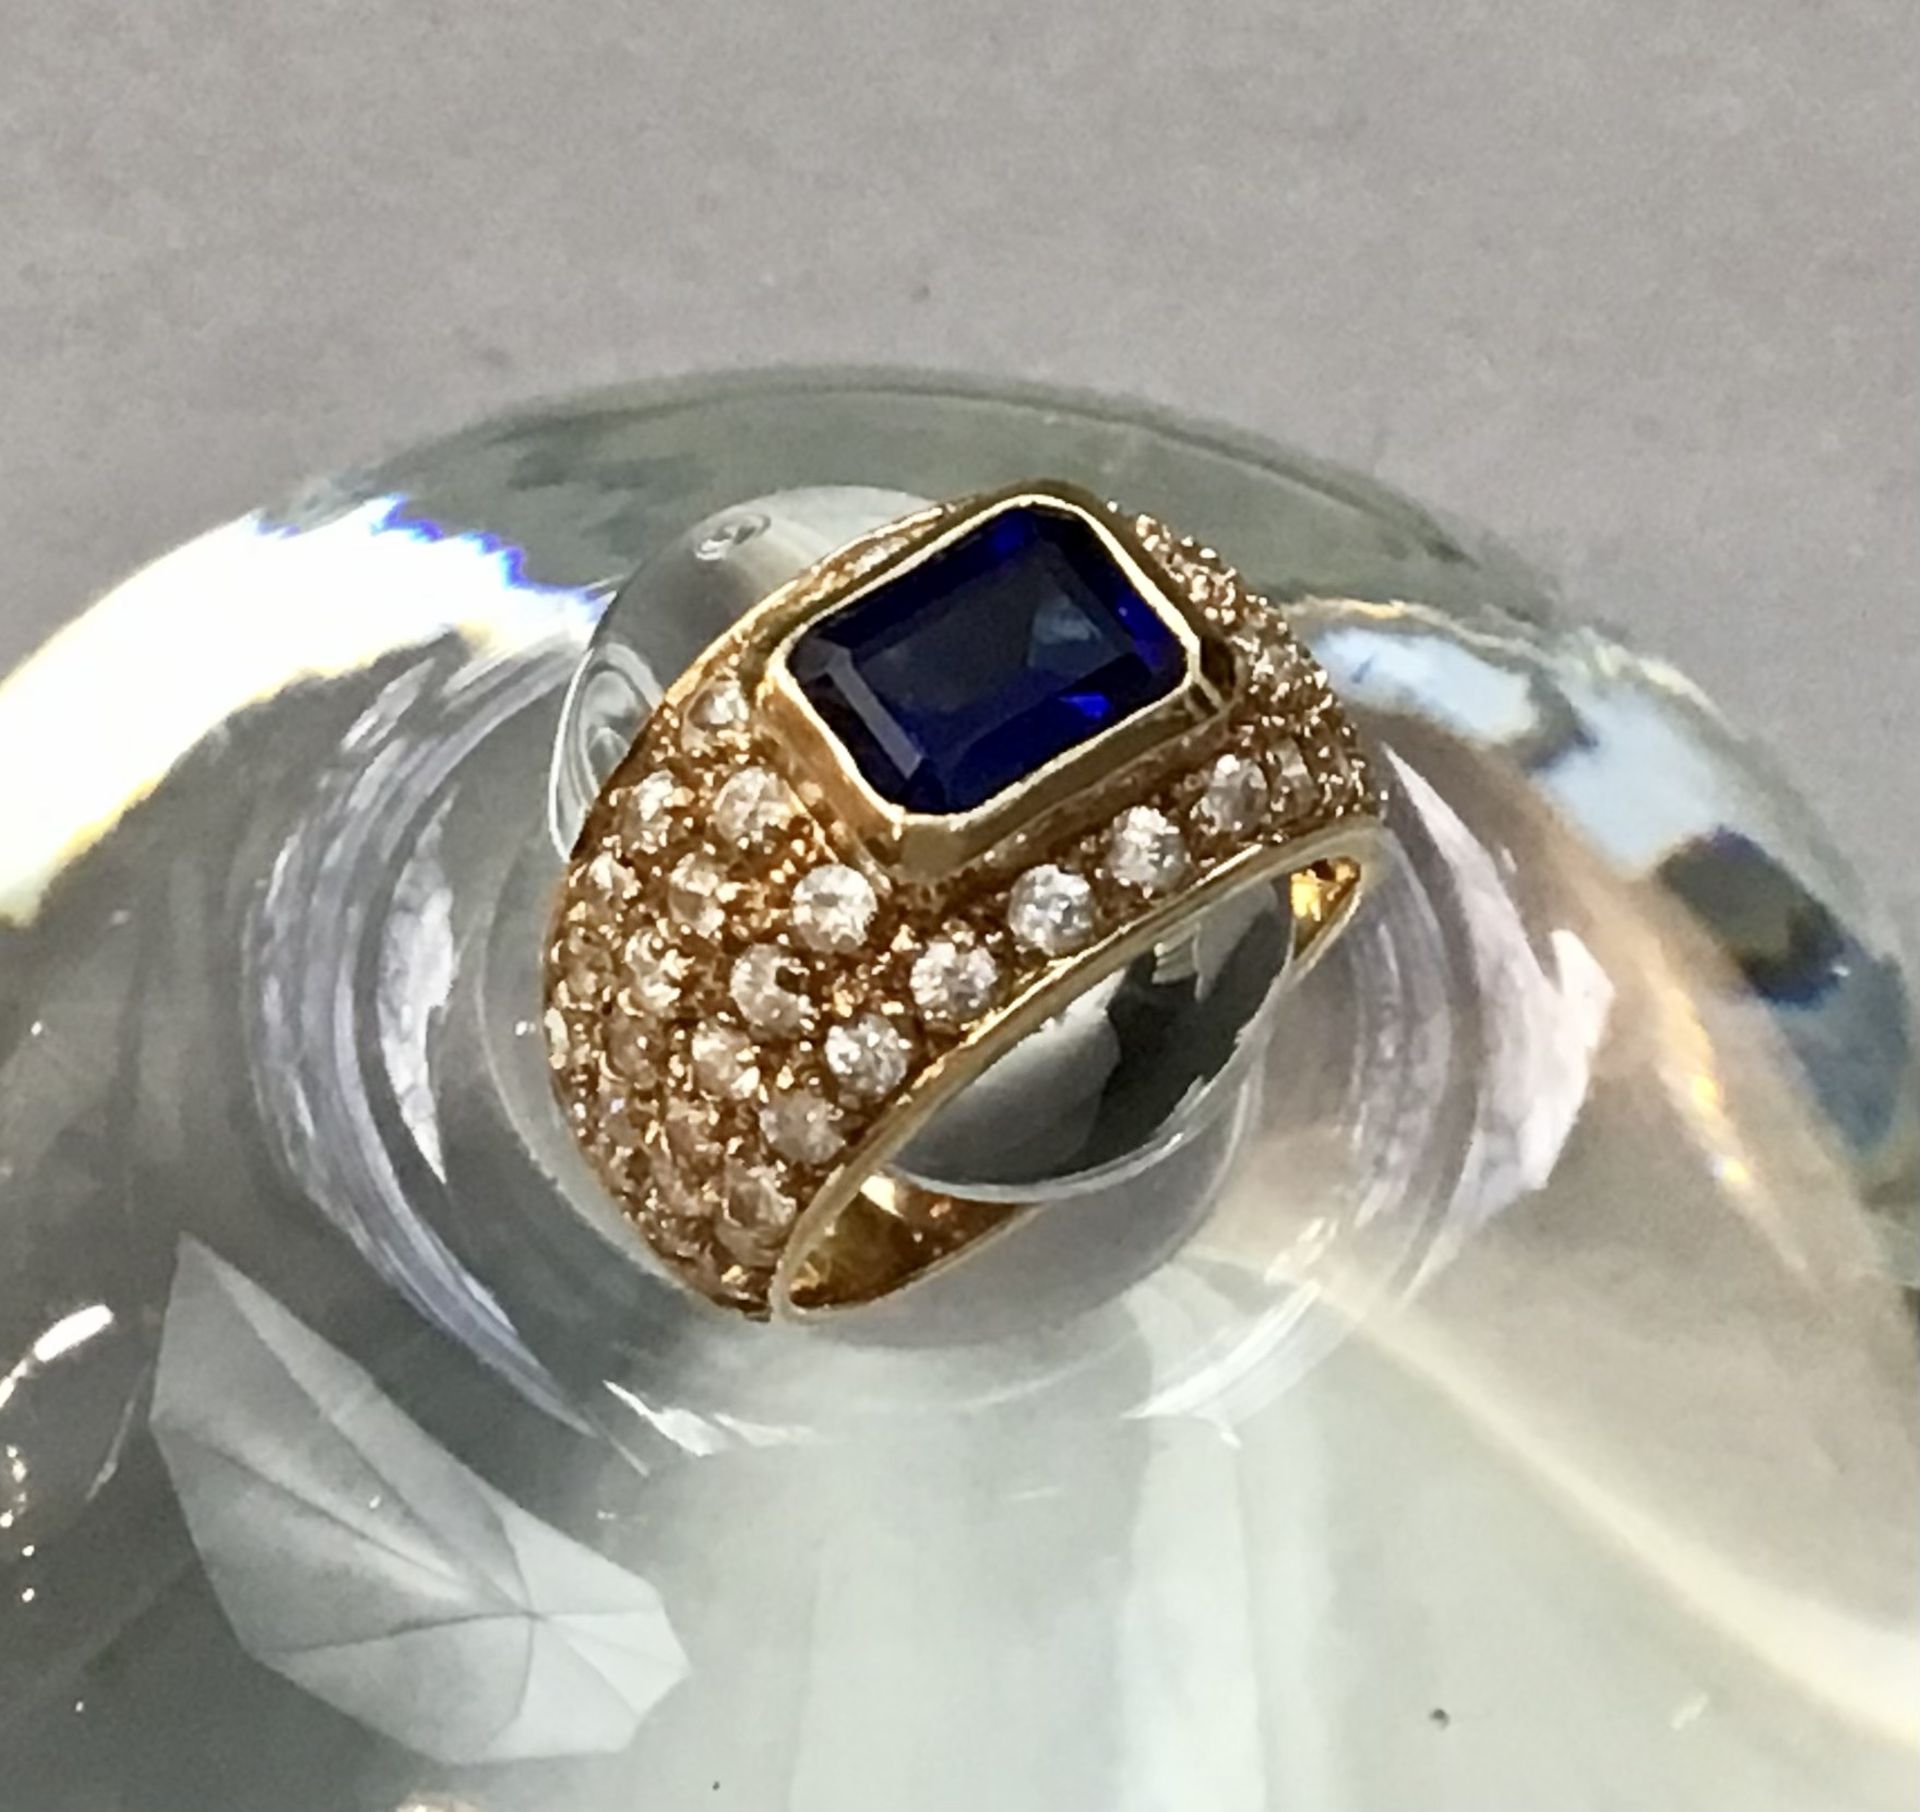 Damenring, GG 585, opulent besetzt mit einem blauen Saphir (0,9x0,6cm), quadratisch facettiert und